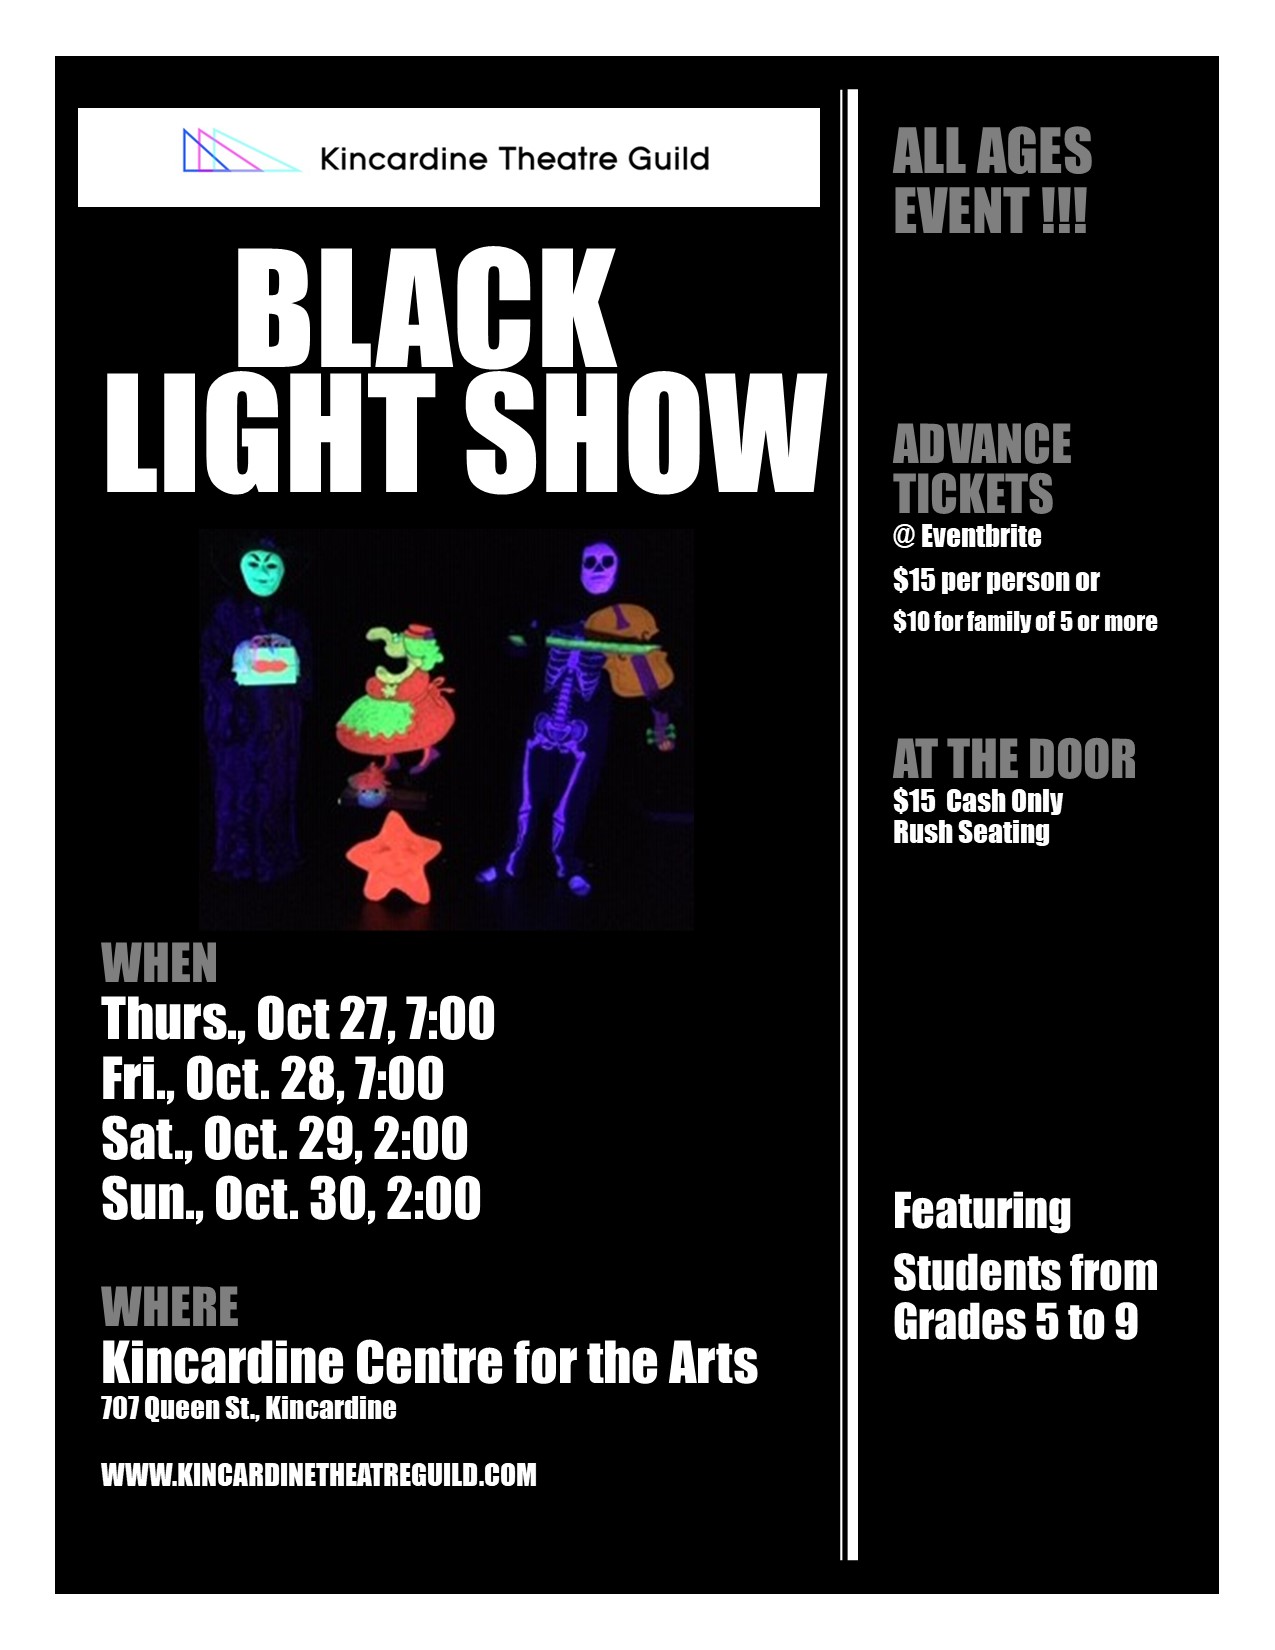 Black Light Show